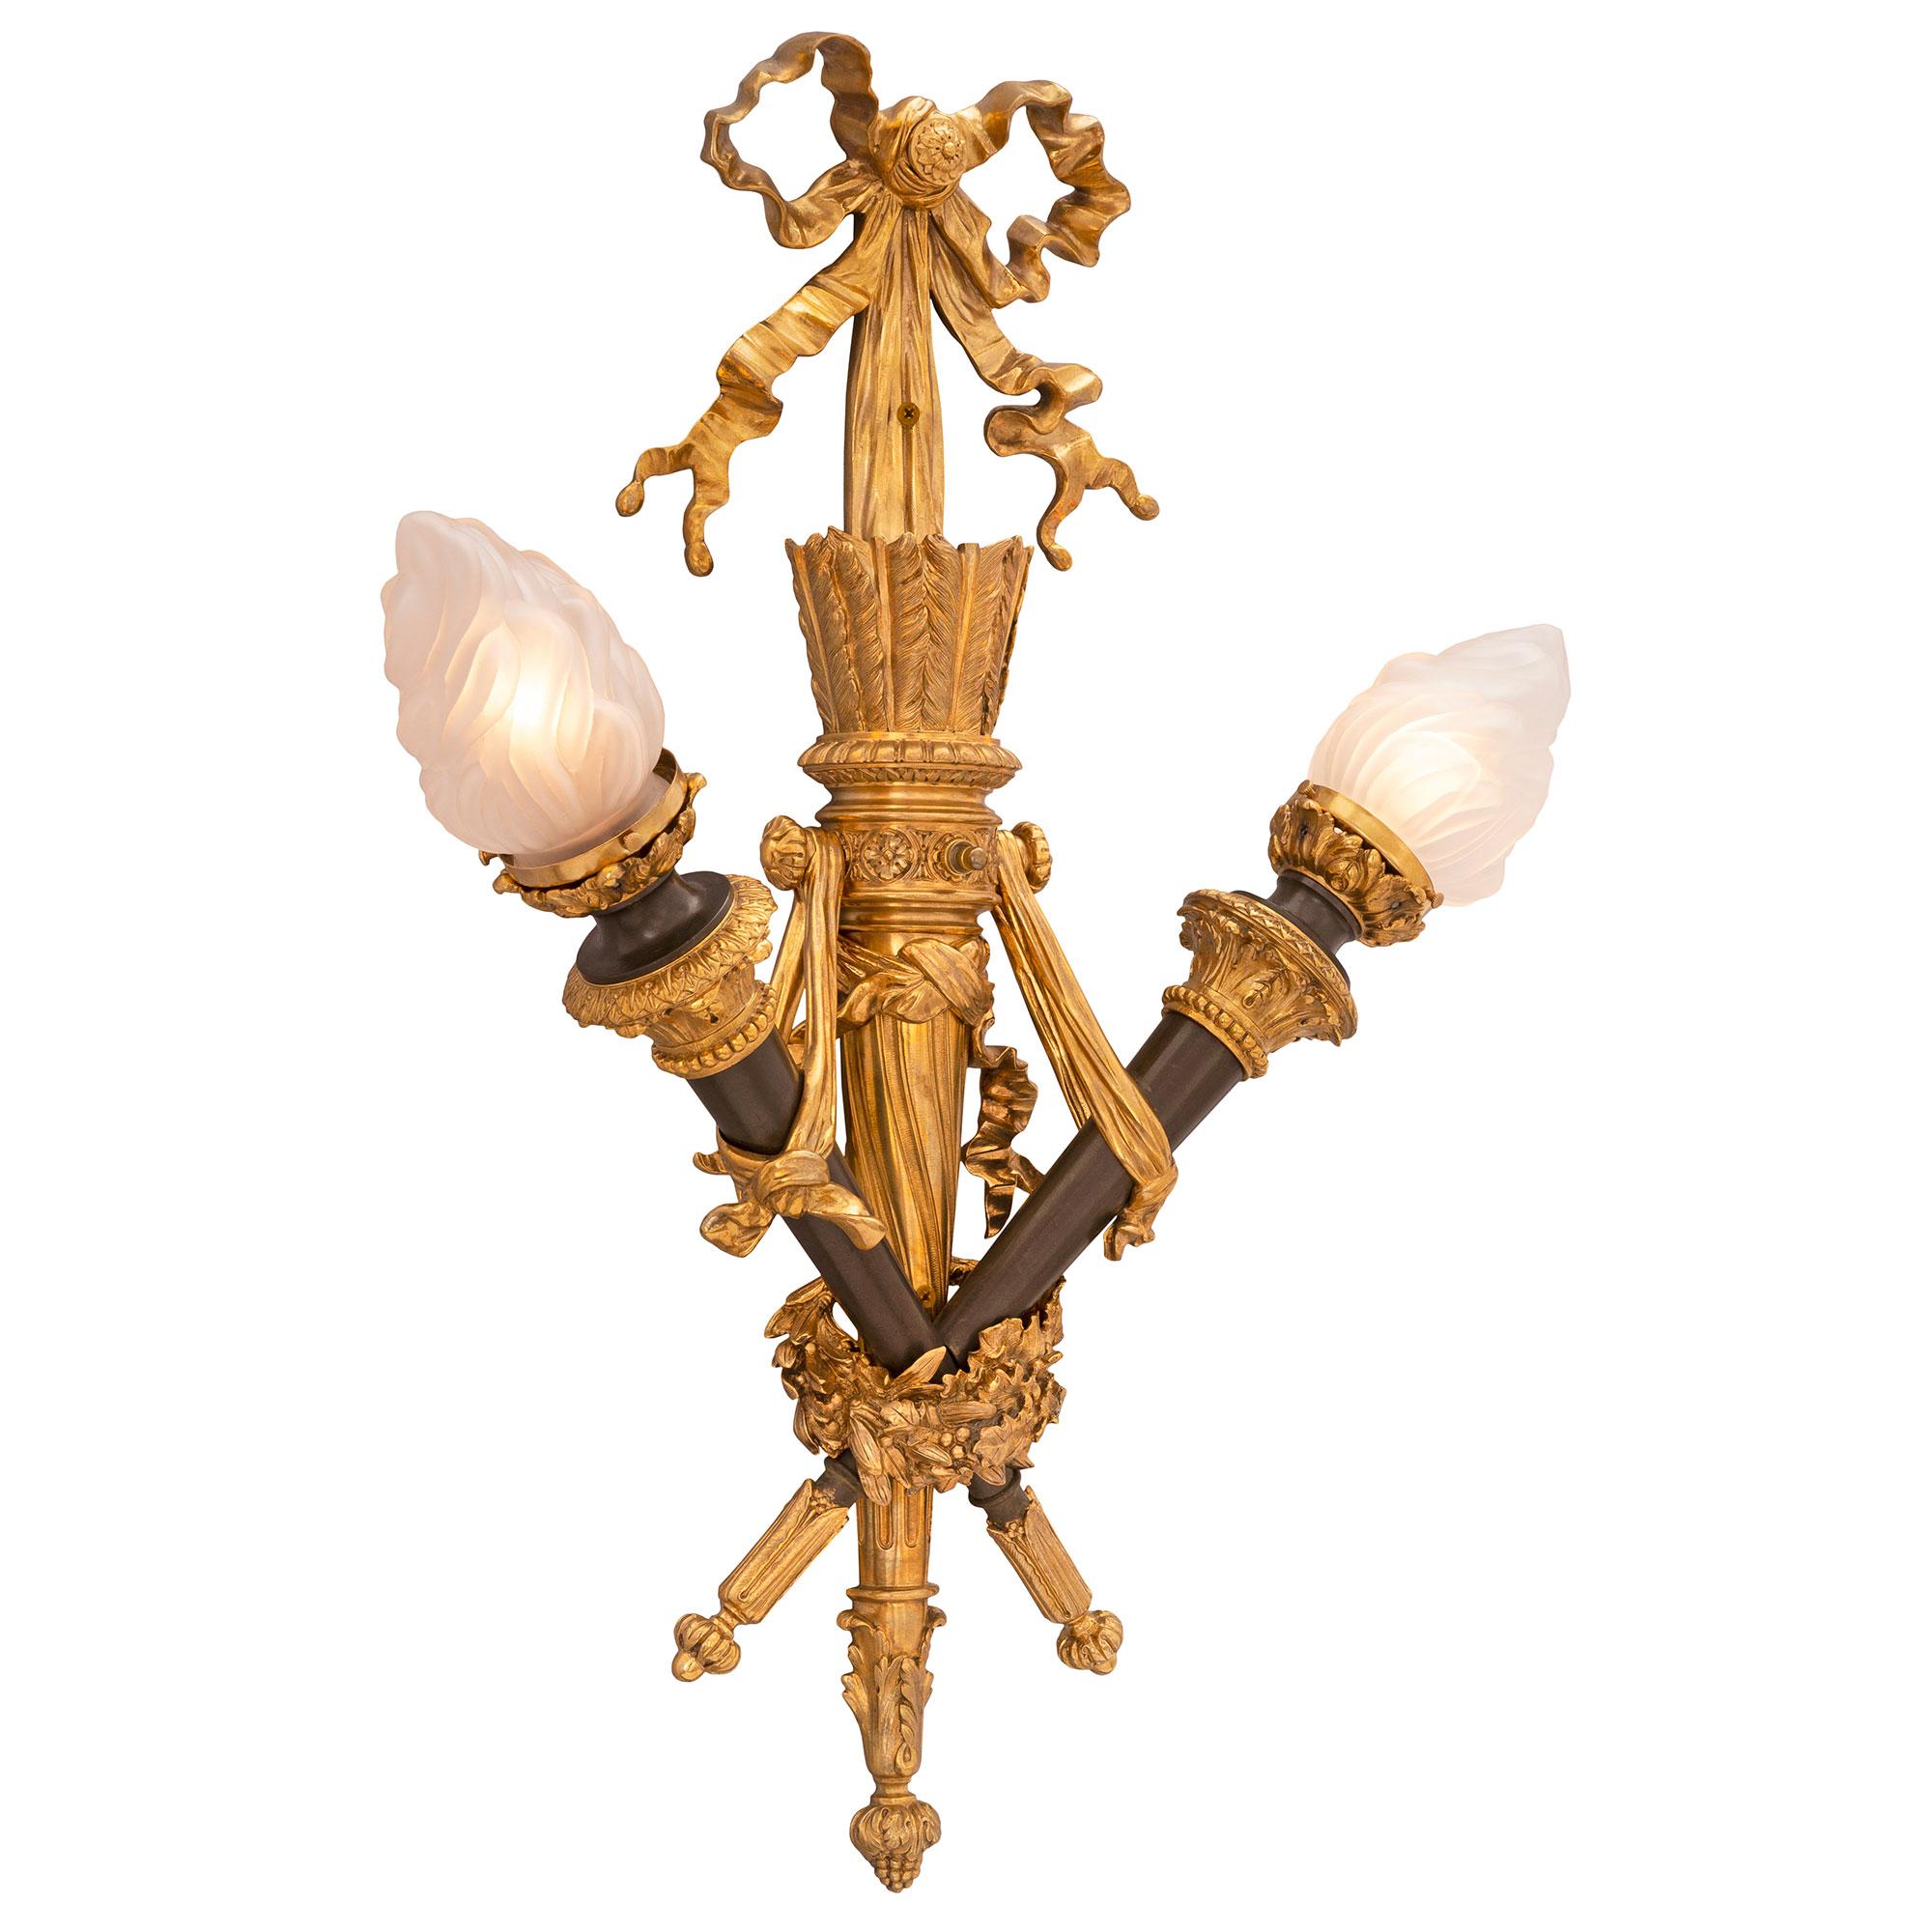 Une superbe paire d'appliques françaises de style Louis XVI du 19ème siècle en bronze doré et patiné. Chaque applique à deux bras est centrée par un magnifique épi de faîtage au milieu de grandes feuilles d'acanthe. Au centre se trouvent les torches